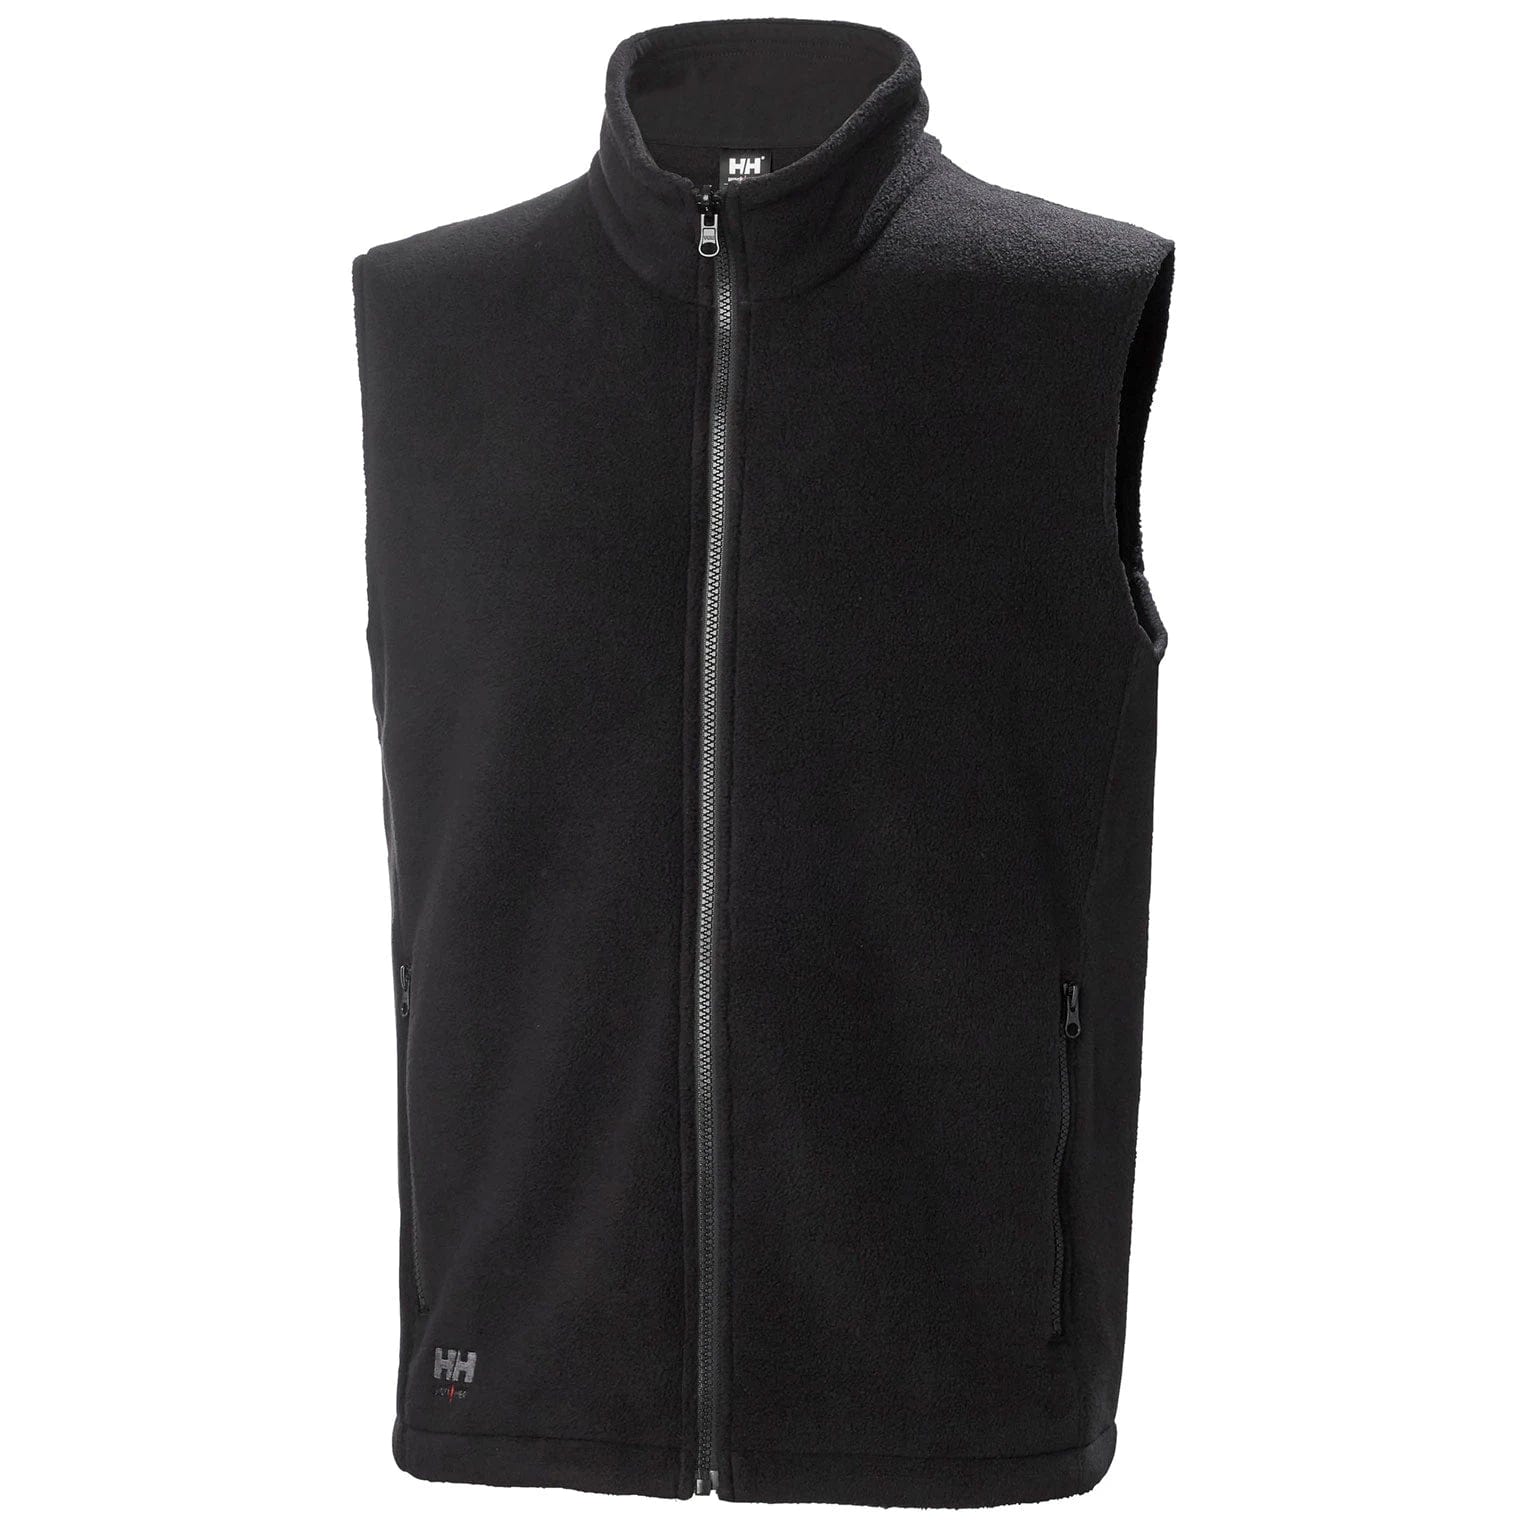 Helly Hansen Workwear Outerwear XS / Black Helly Hansen Workwear - Men's Manchester 2.0 Fleece Vest